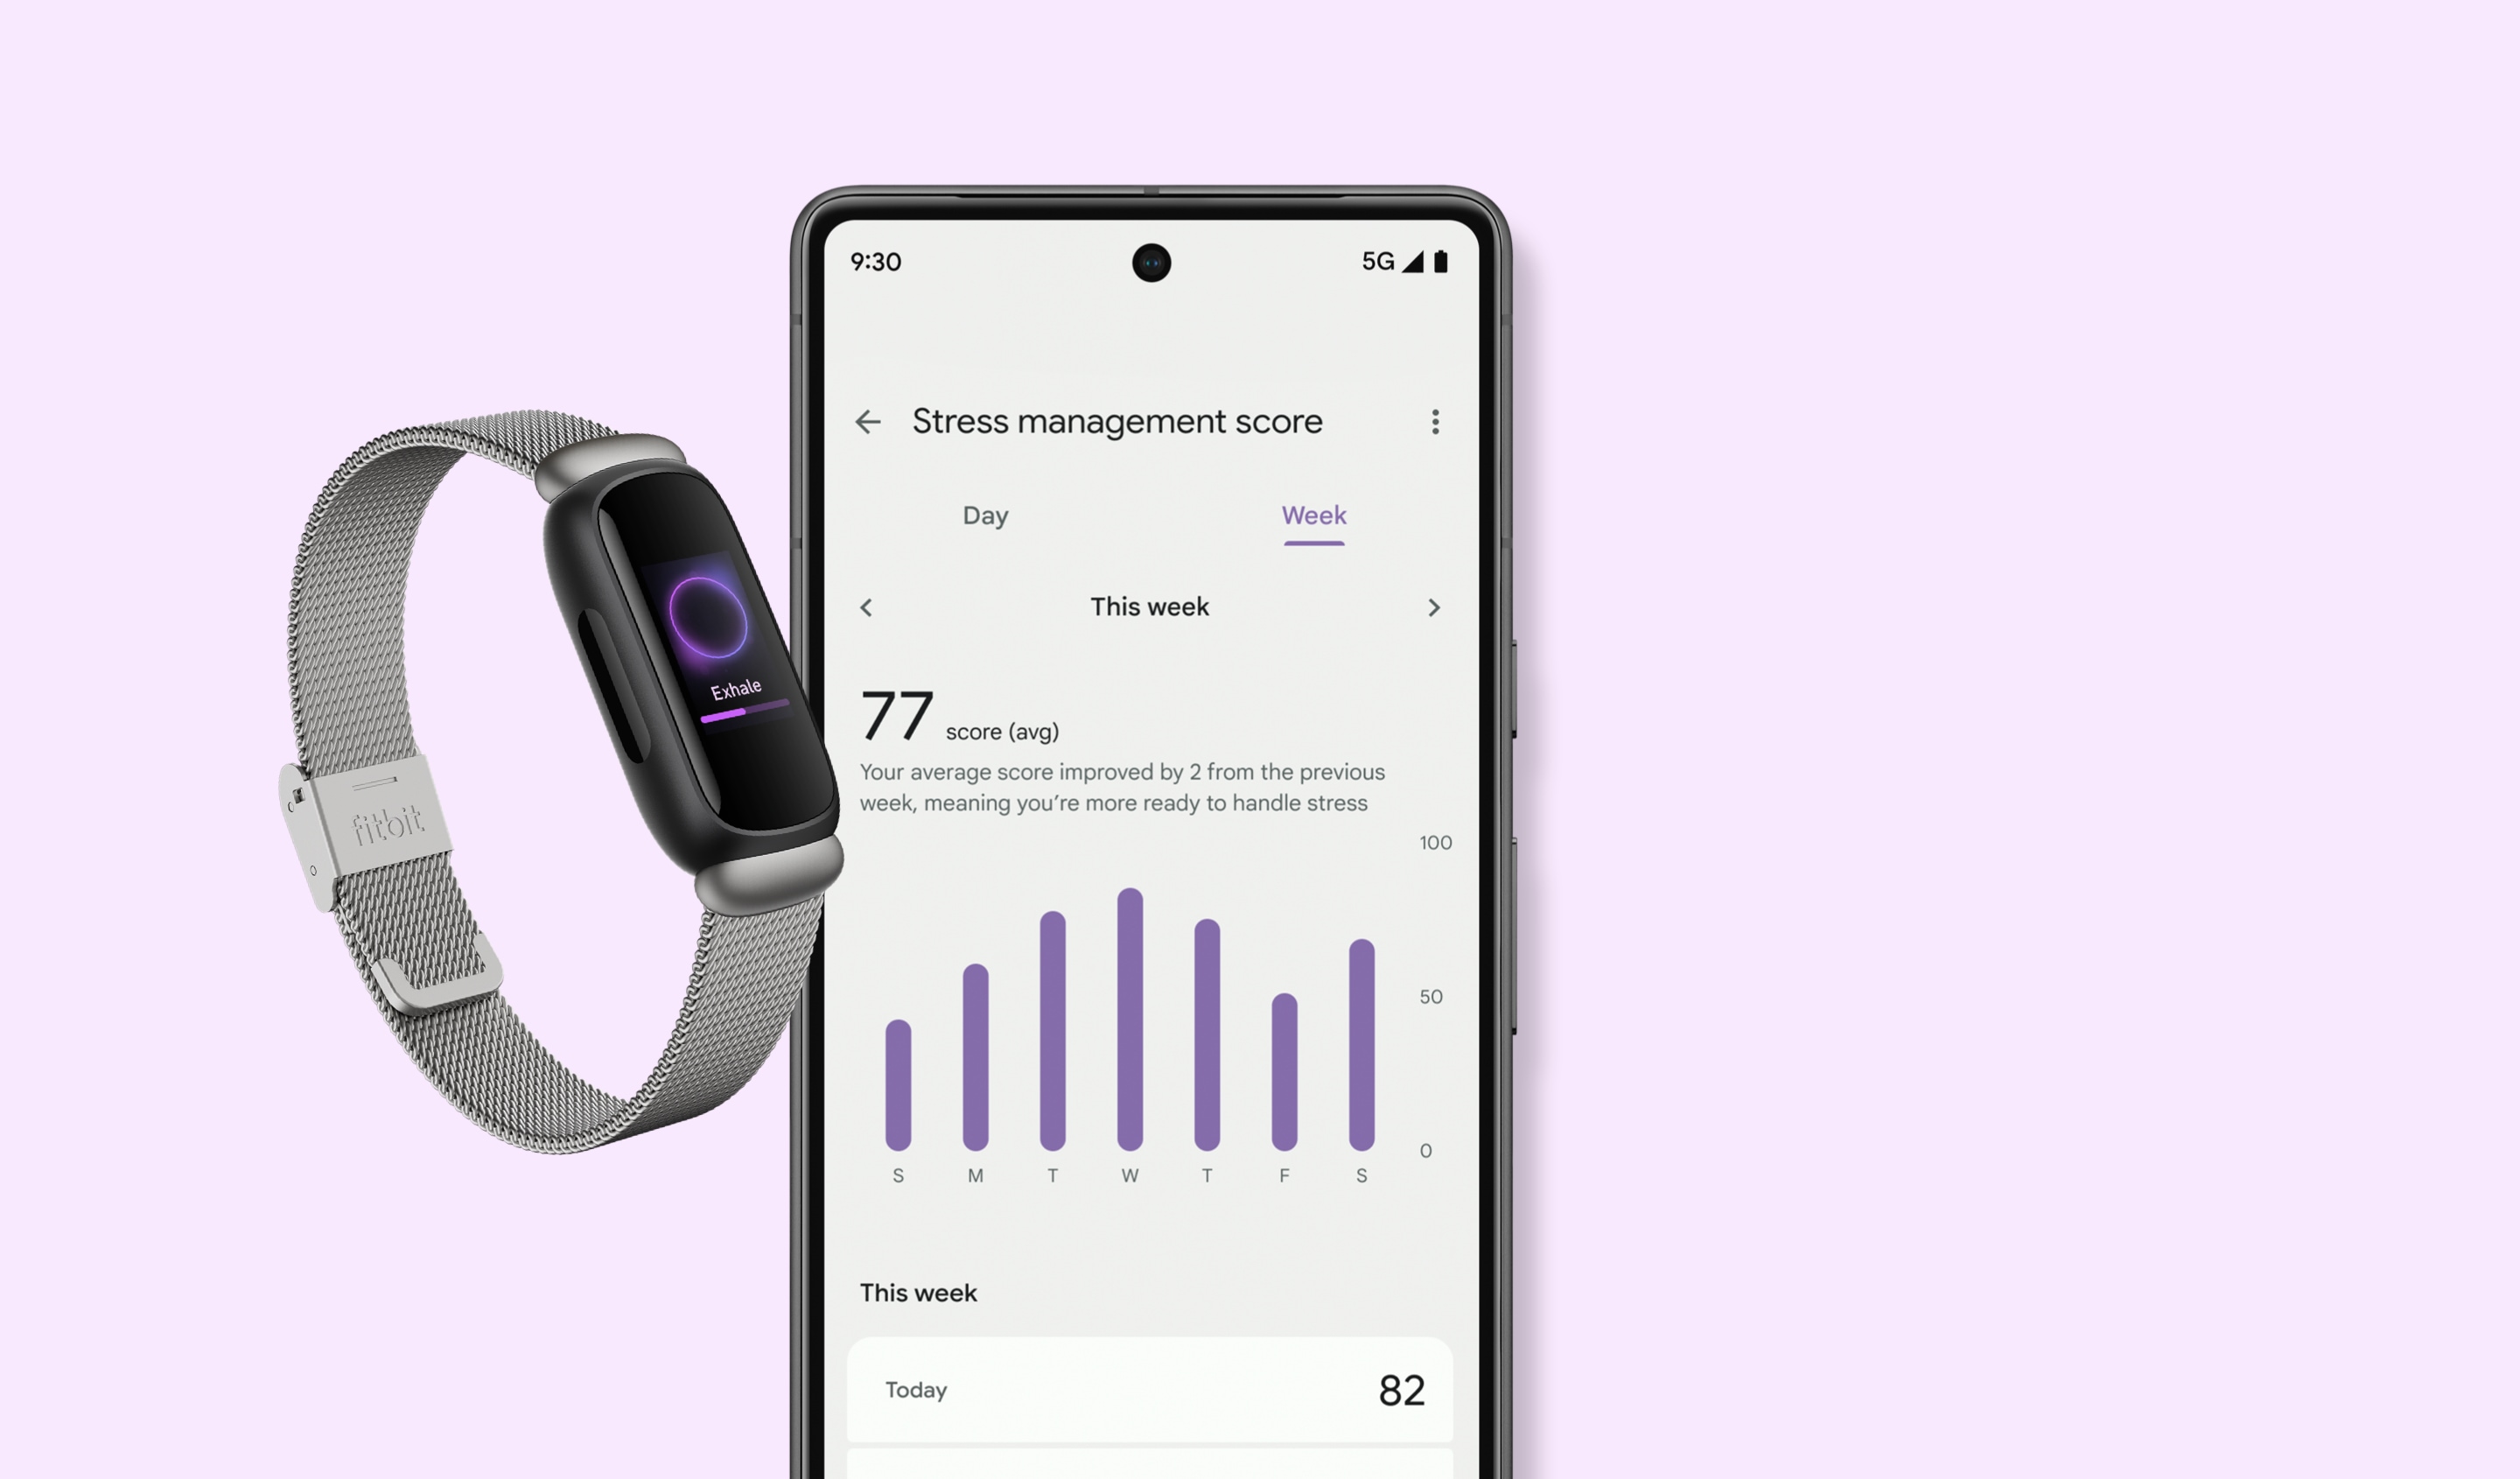 Bracelets connectés Fitbit Inspire 3 Lilas - inclus 6 mois à